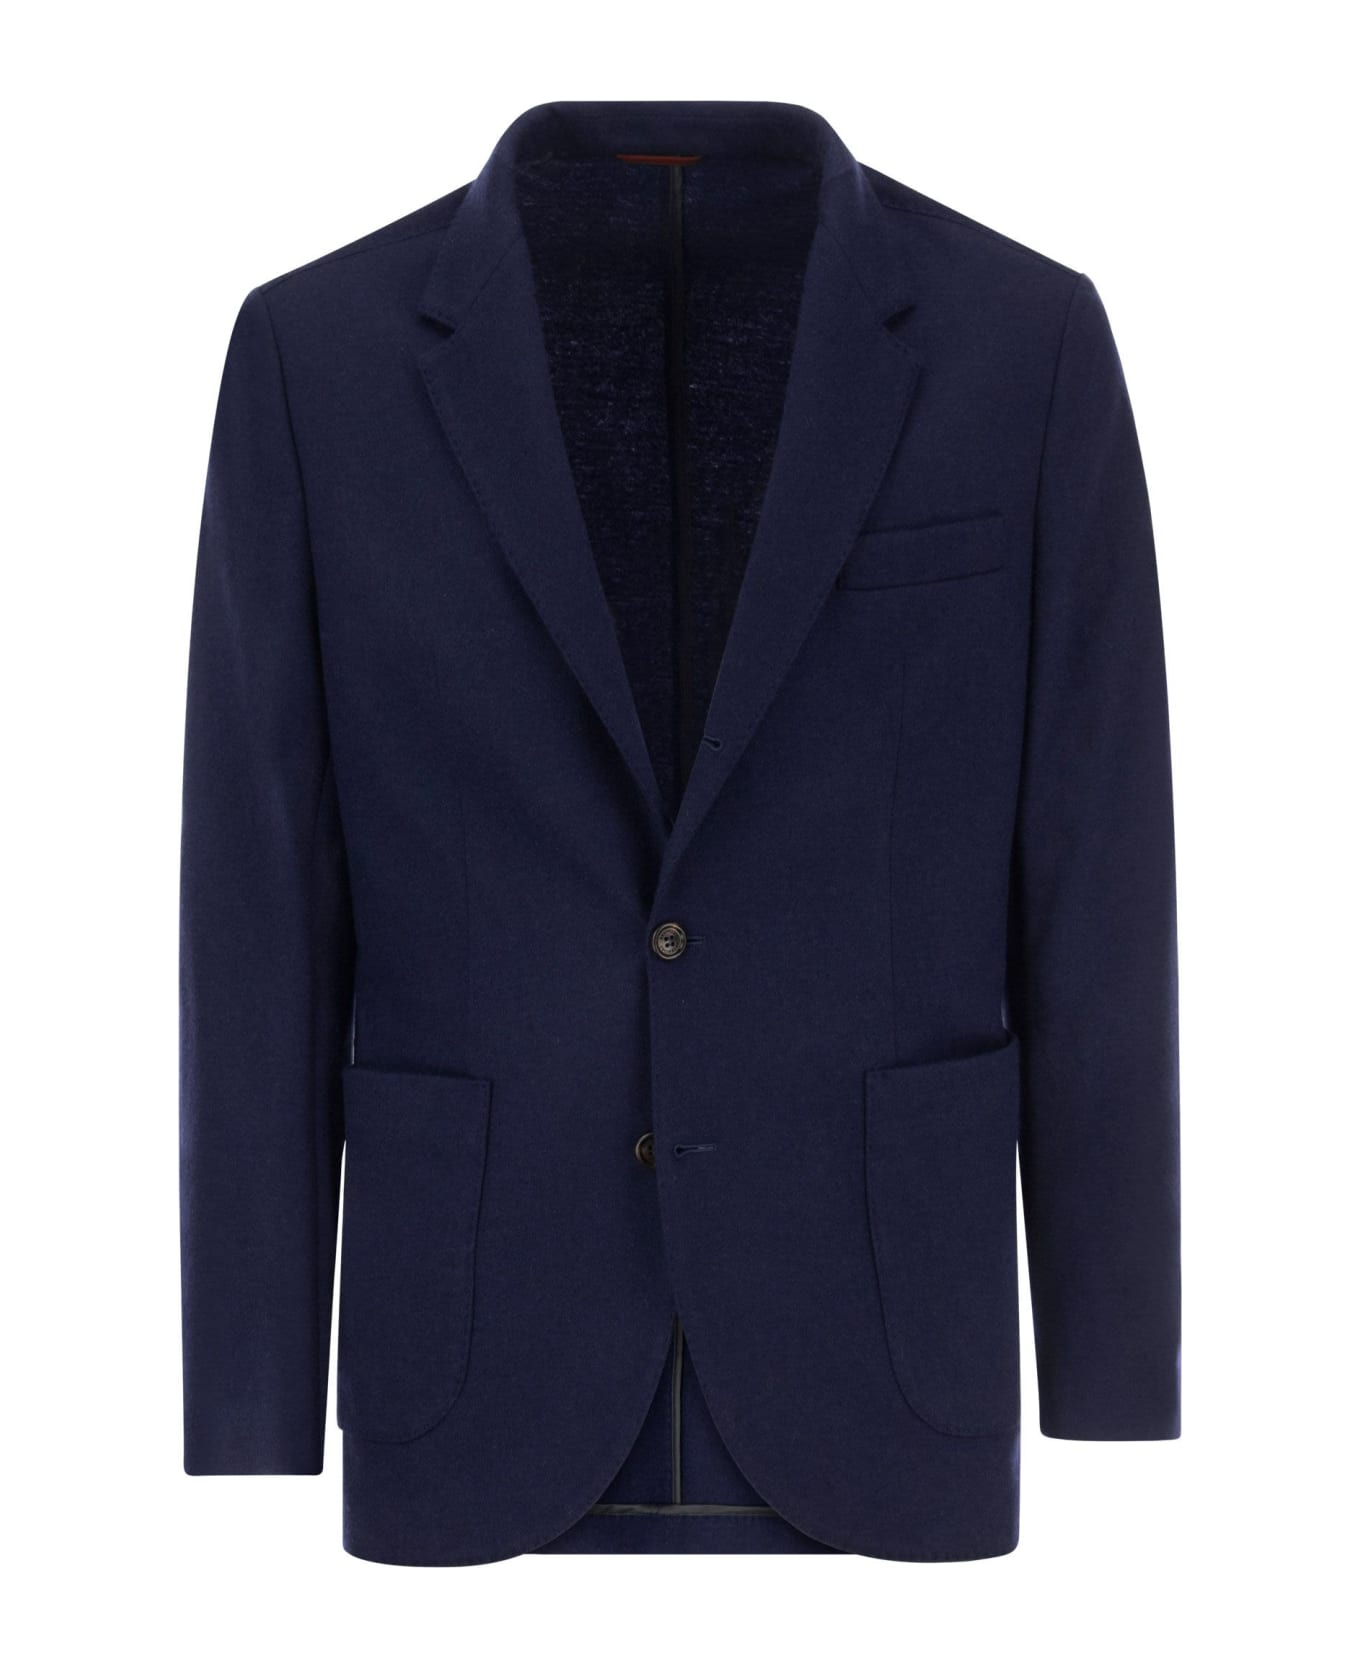 Brunello Cucinelli Cashmere Jersey Blazer With Patch Pockets - Cobalt